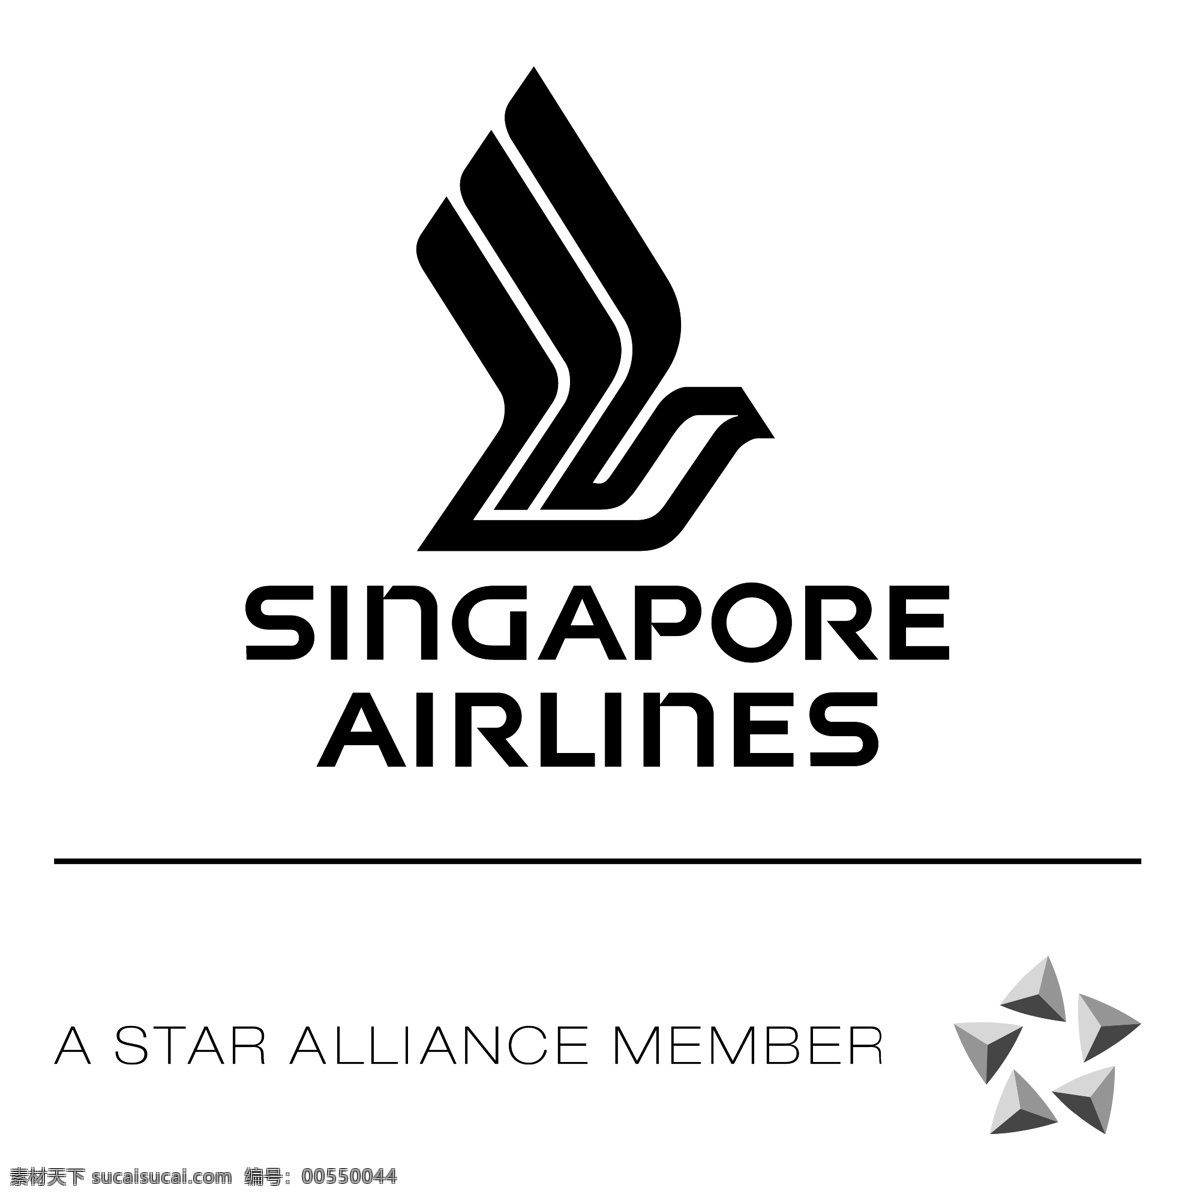 新加坡航空公司 新加坡 标识 向量 标志 矢量 矢量图 建筑家居